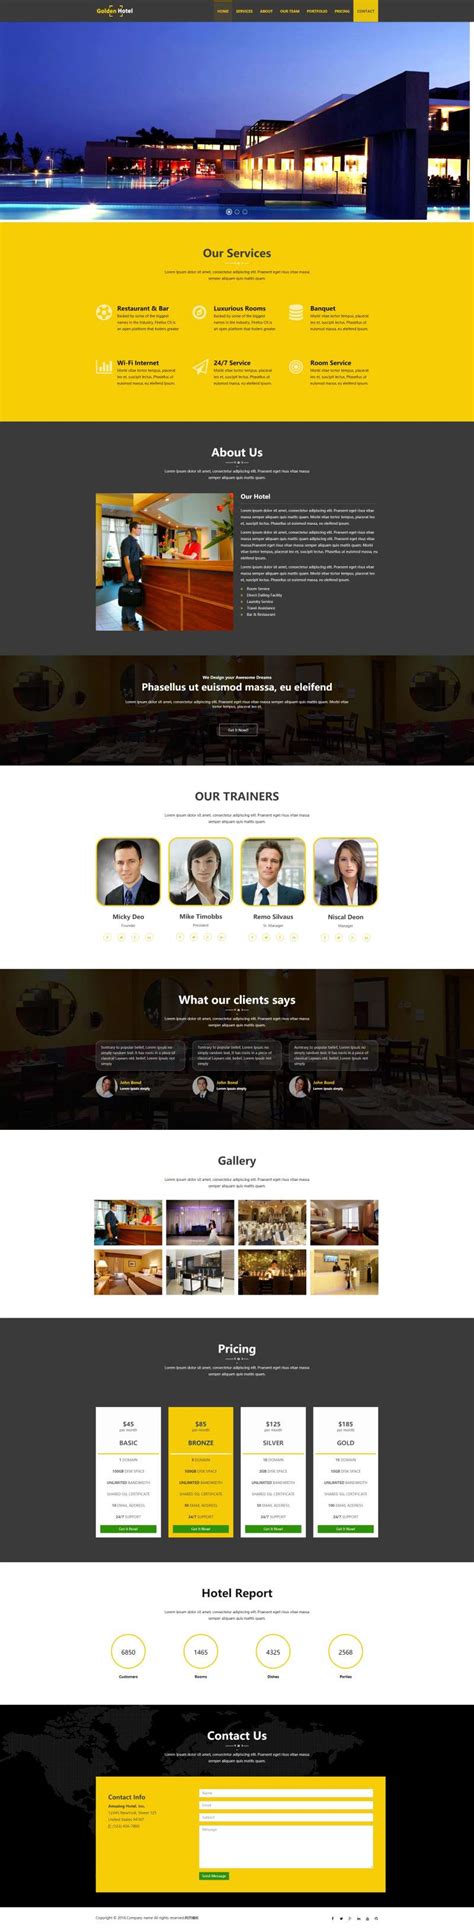 大气宽屏html商务酒店企业网站模板-17素材网